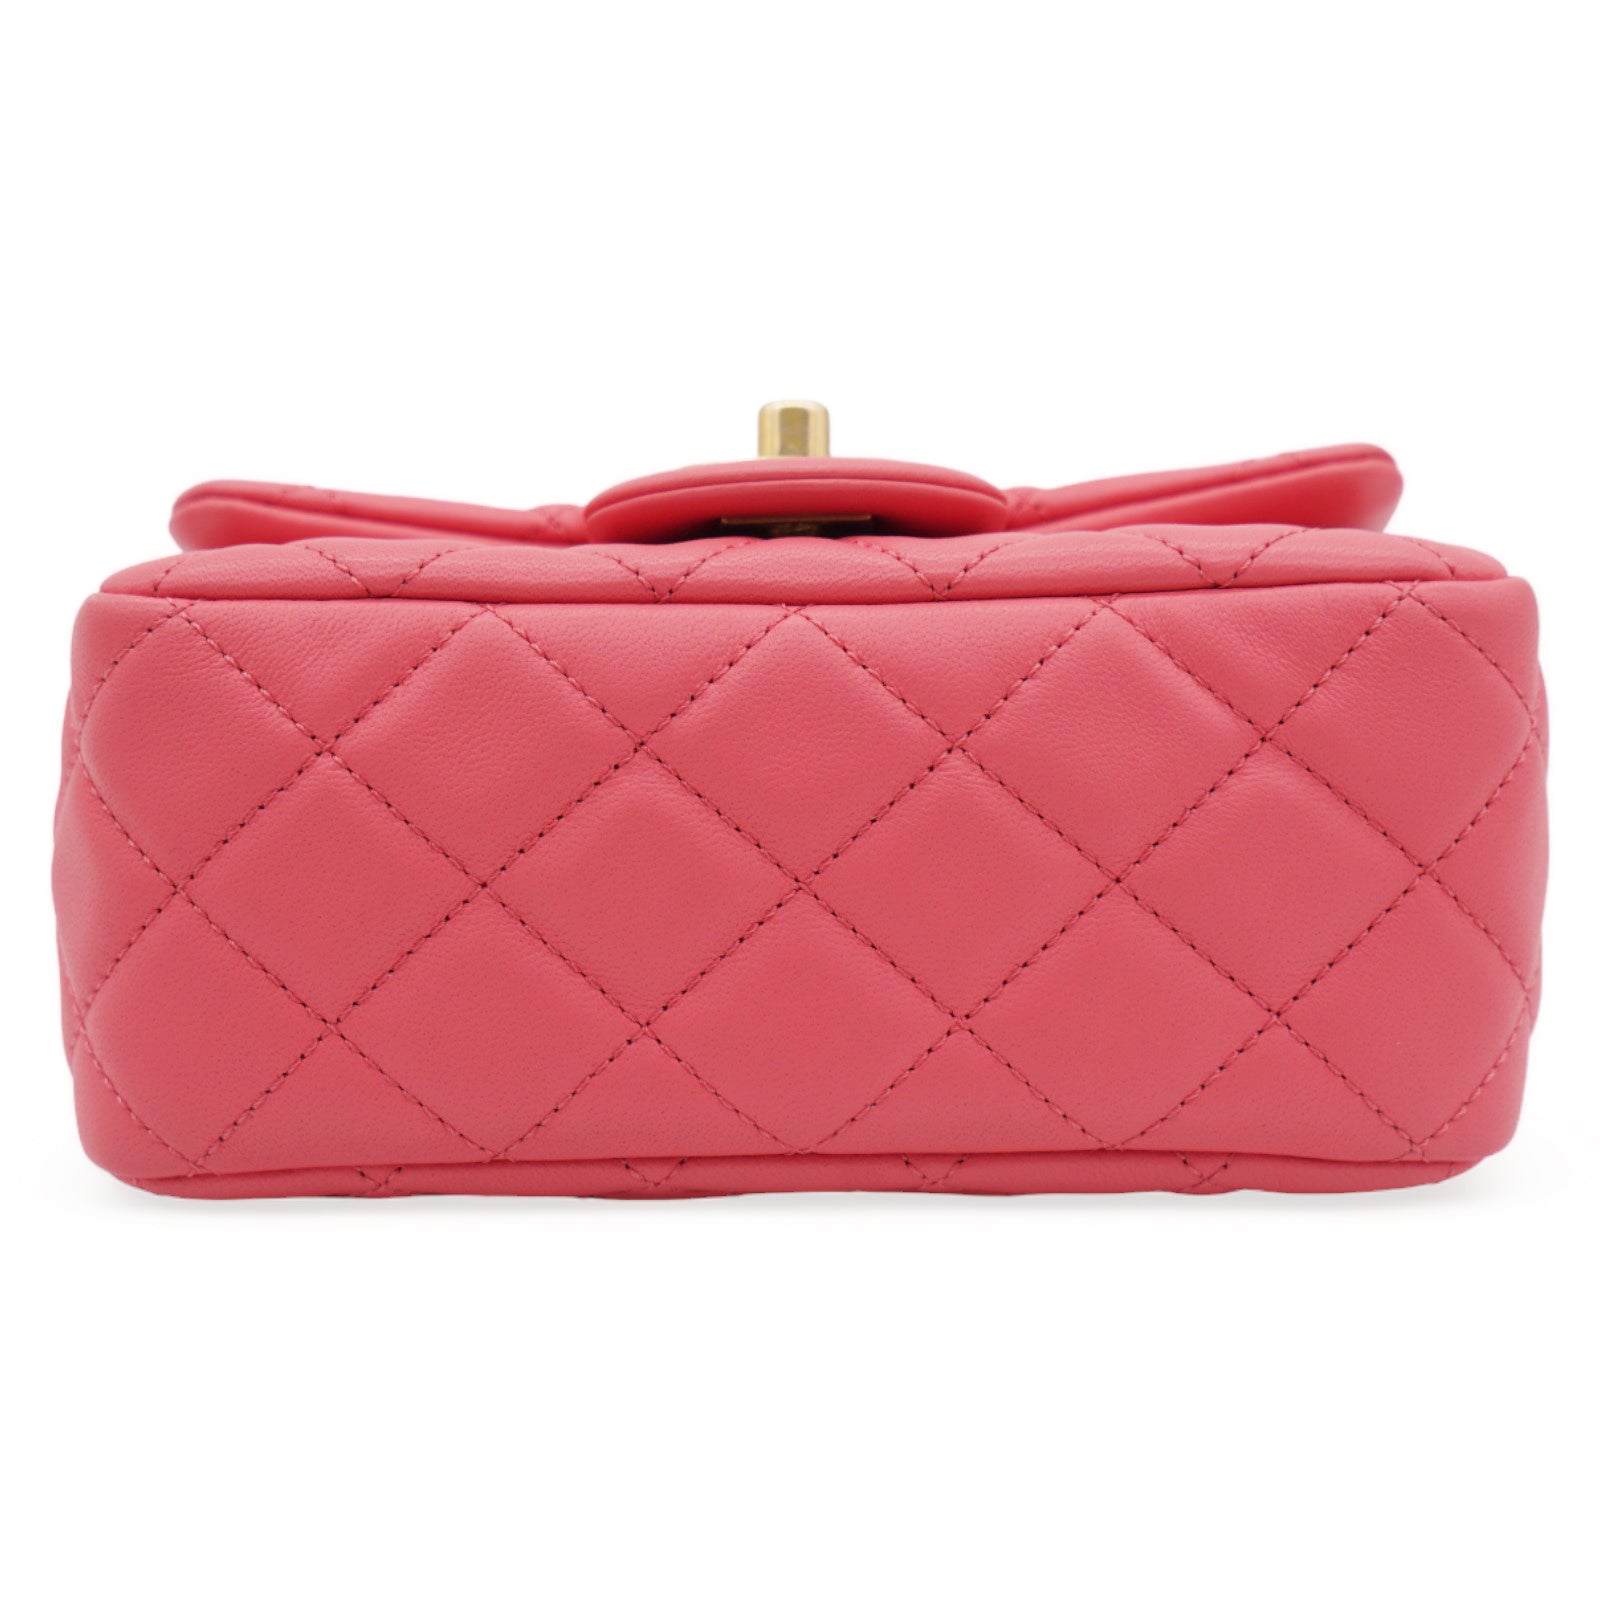 How to: Authenticate your Chanel Classic Flap bag – l'Étoile de